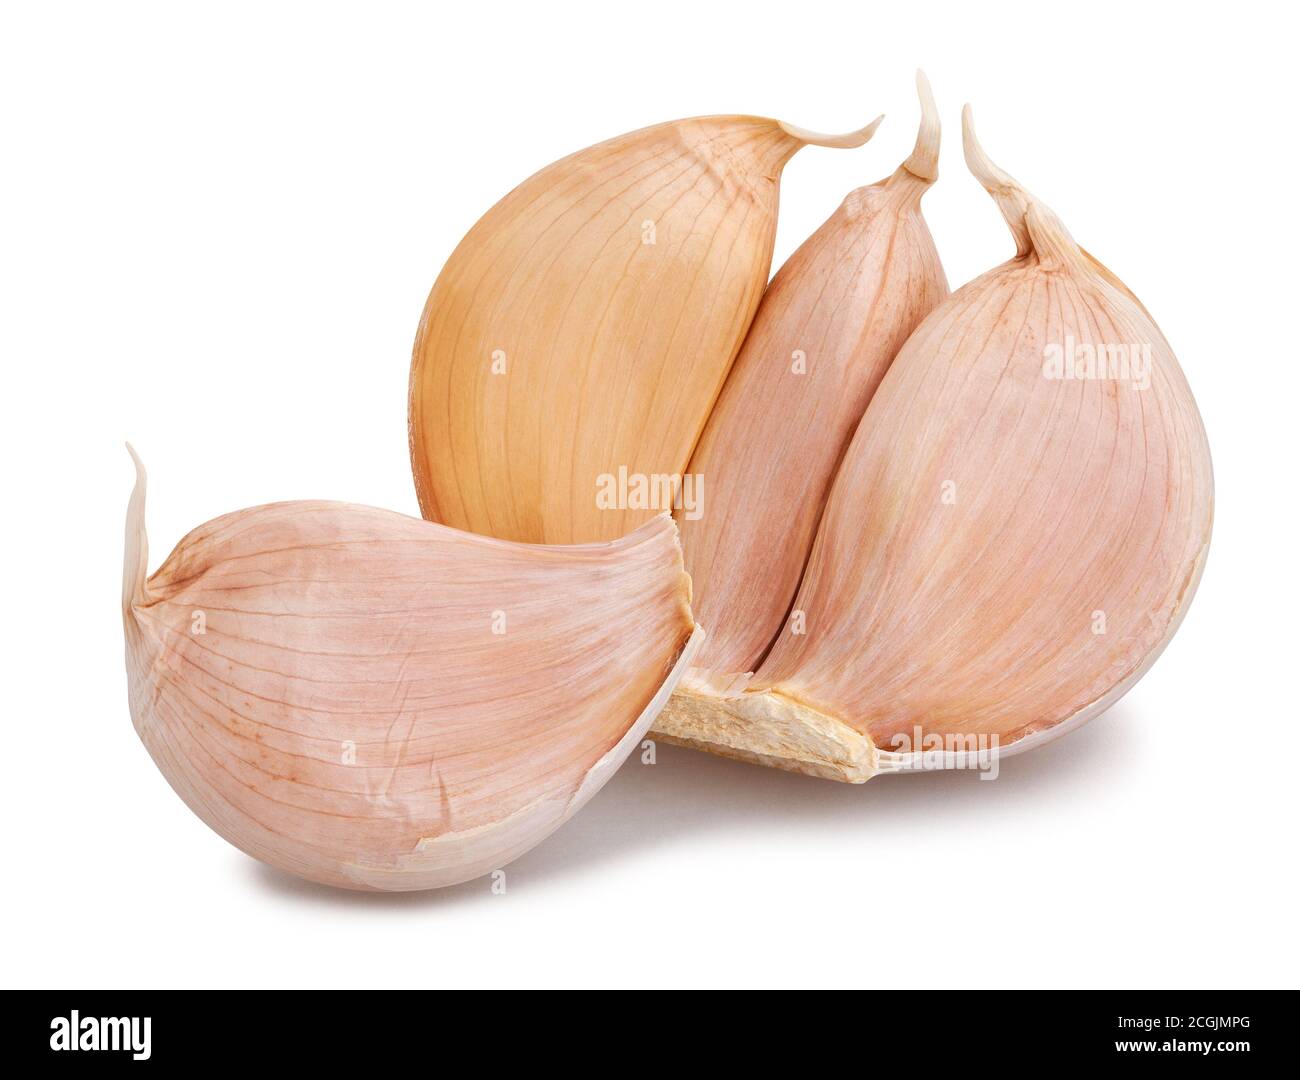 peeled garlic cloves isolated on white background Stock Photo